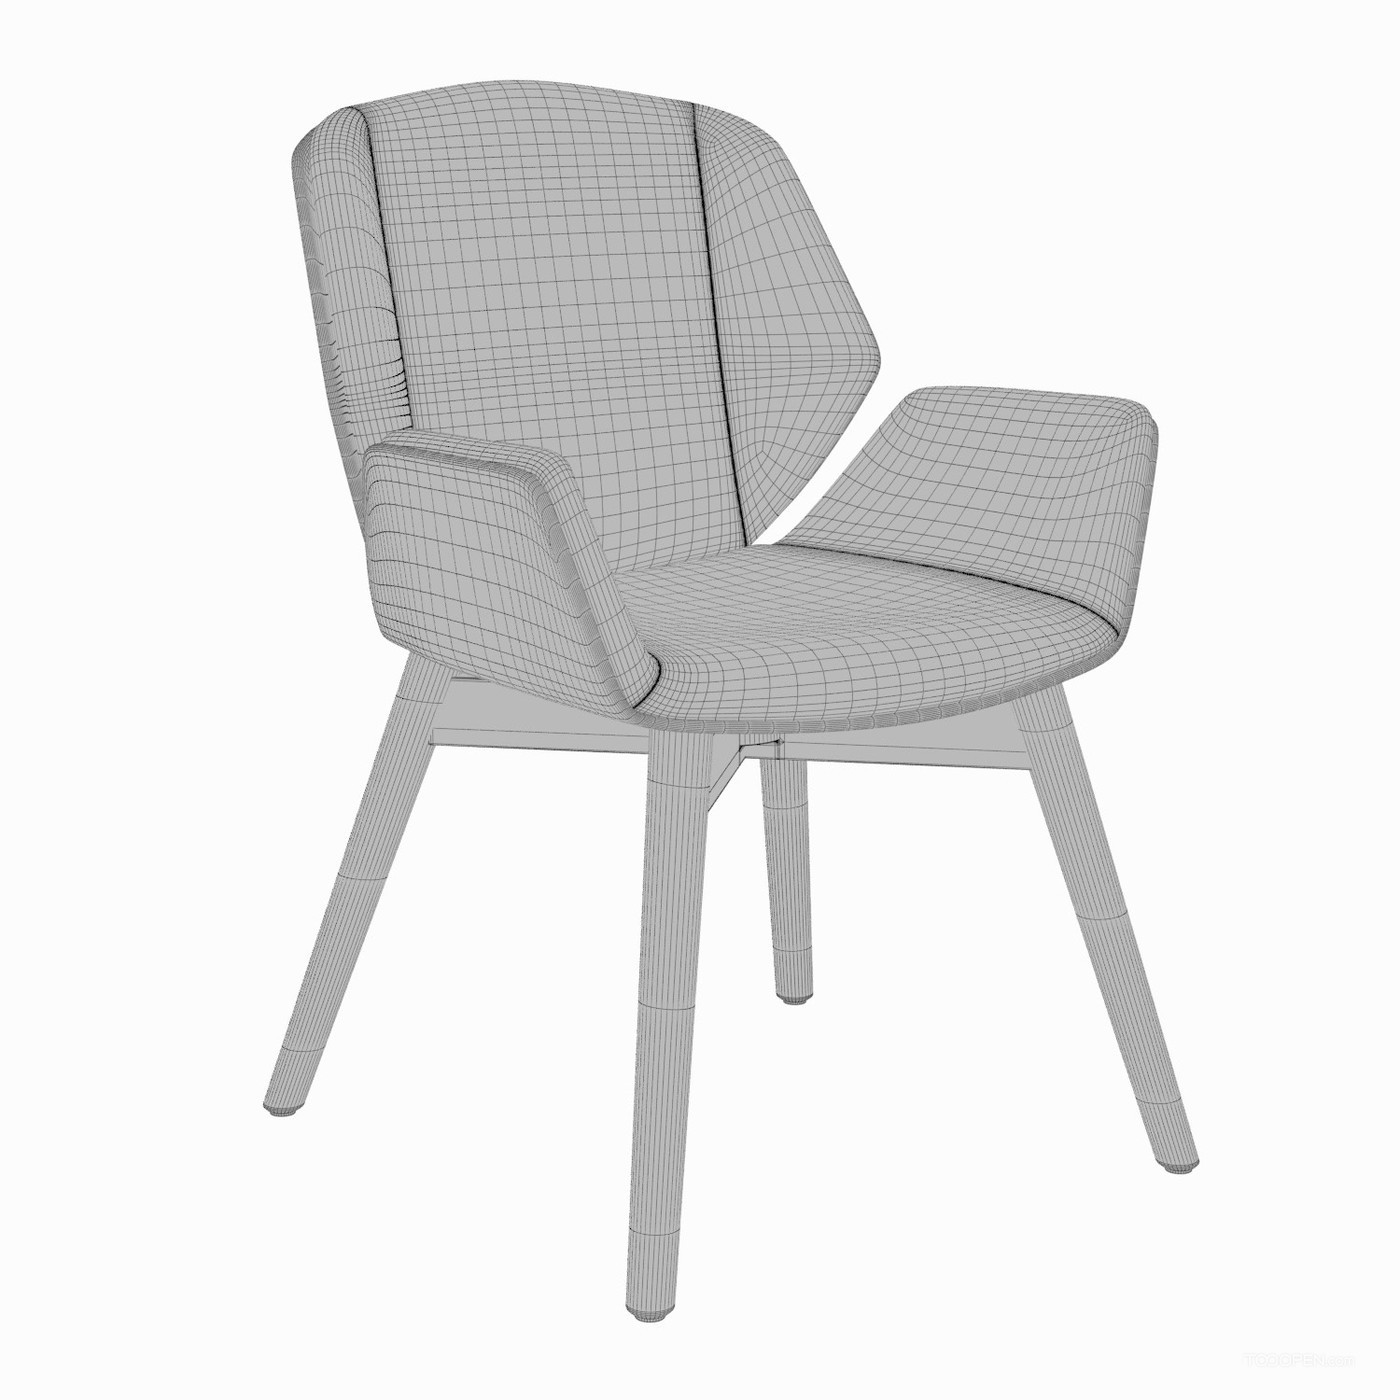 时尚简约风格的椅子家具设计欣赏-09